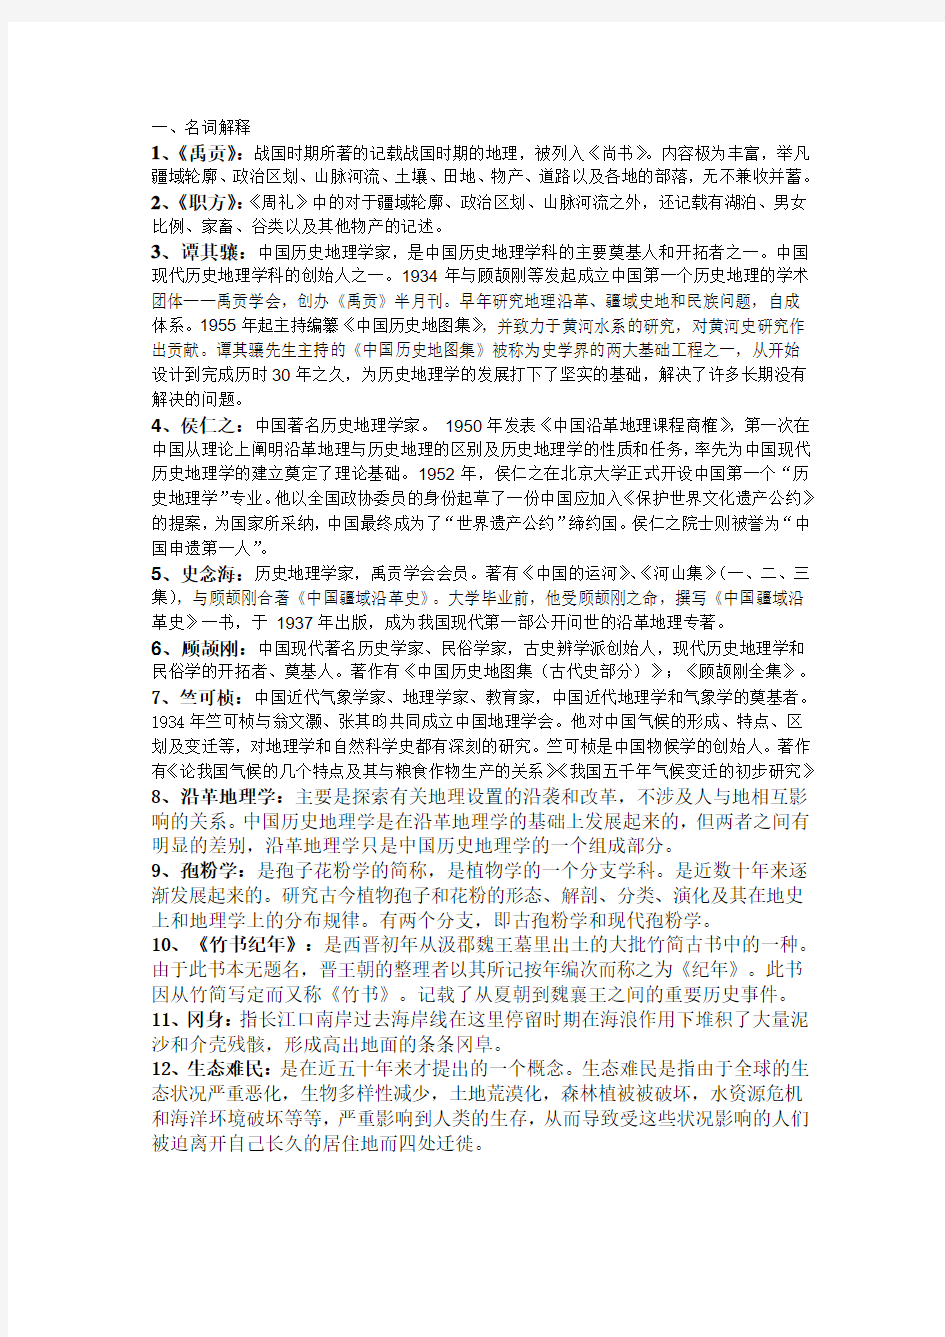 西北大学文化遗产学院中国历史地理复习资料